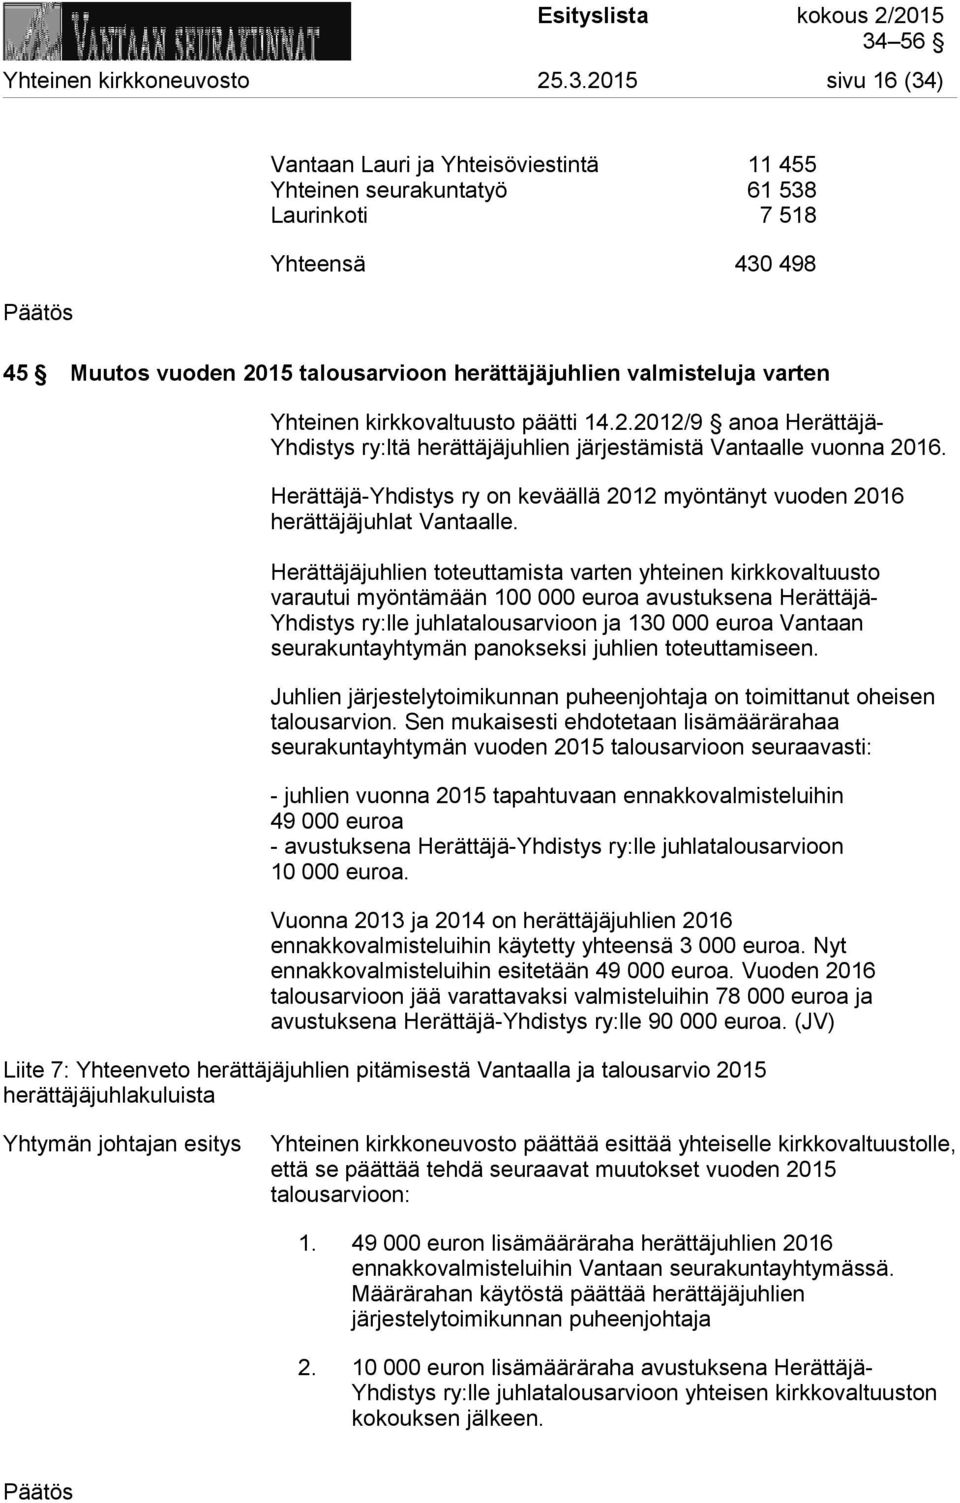 Yhteinen kirkkovaltuusto päätti 14.2.2012/9 anoa Herättäjä- Yhdistys ry:ltä herättäjäjuhlien järjestämistä Vantaalle vuonna 2016.